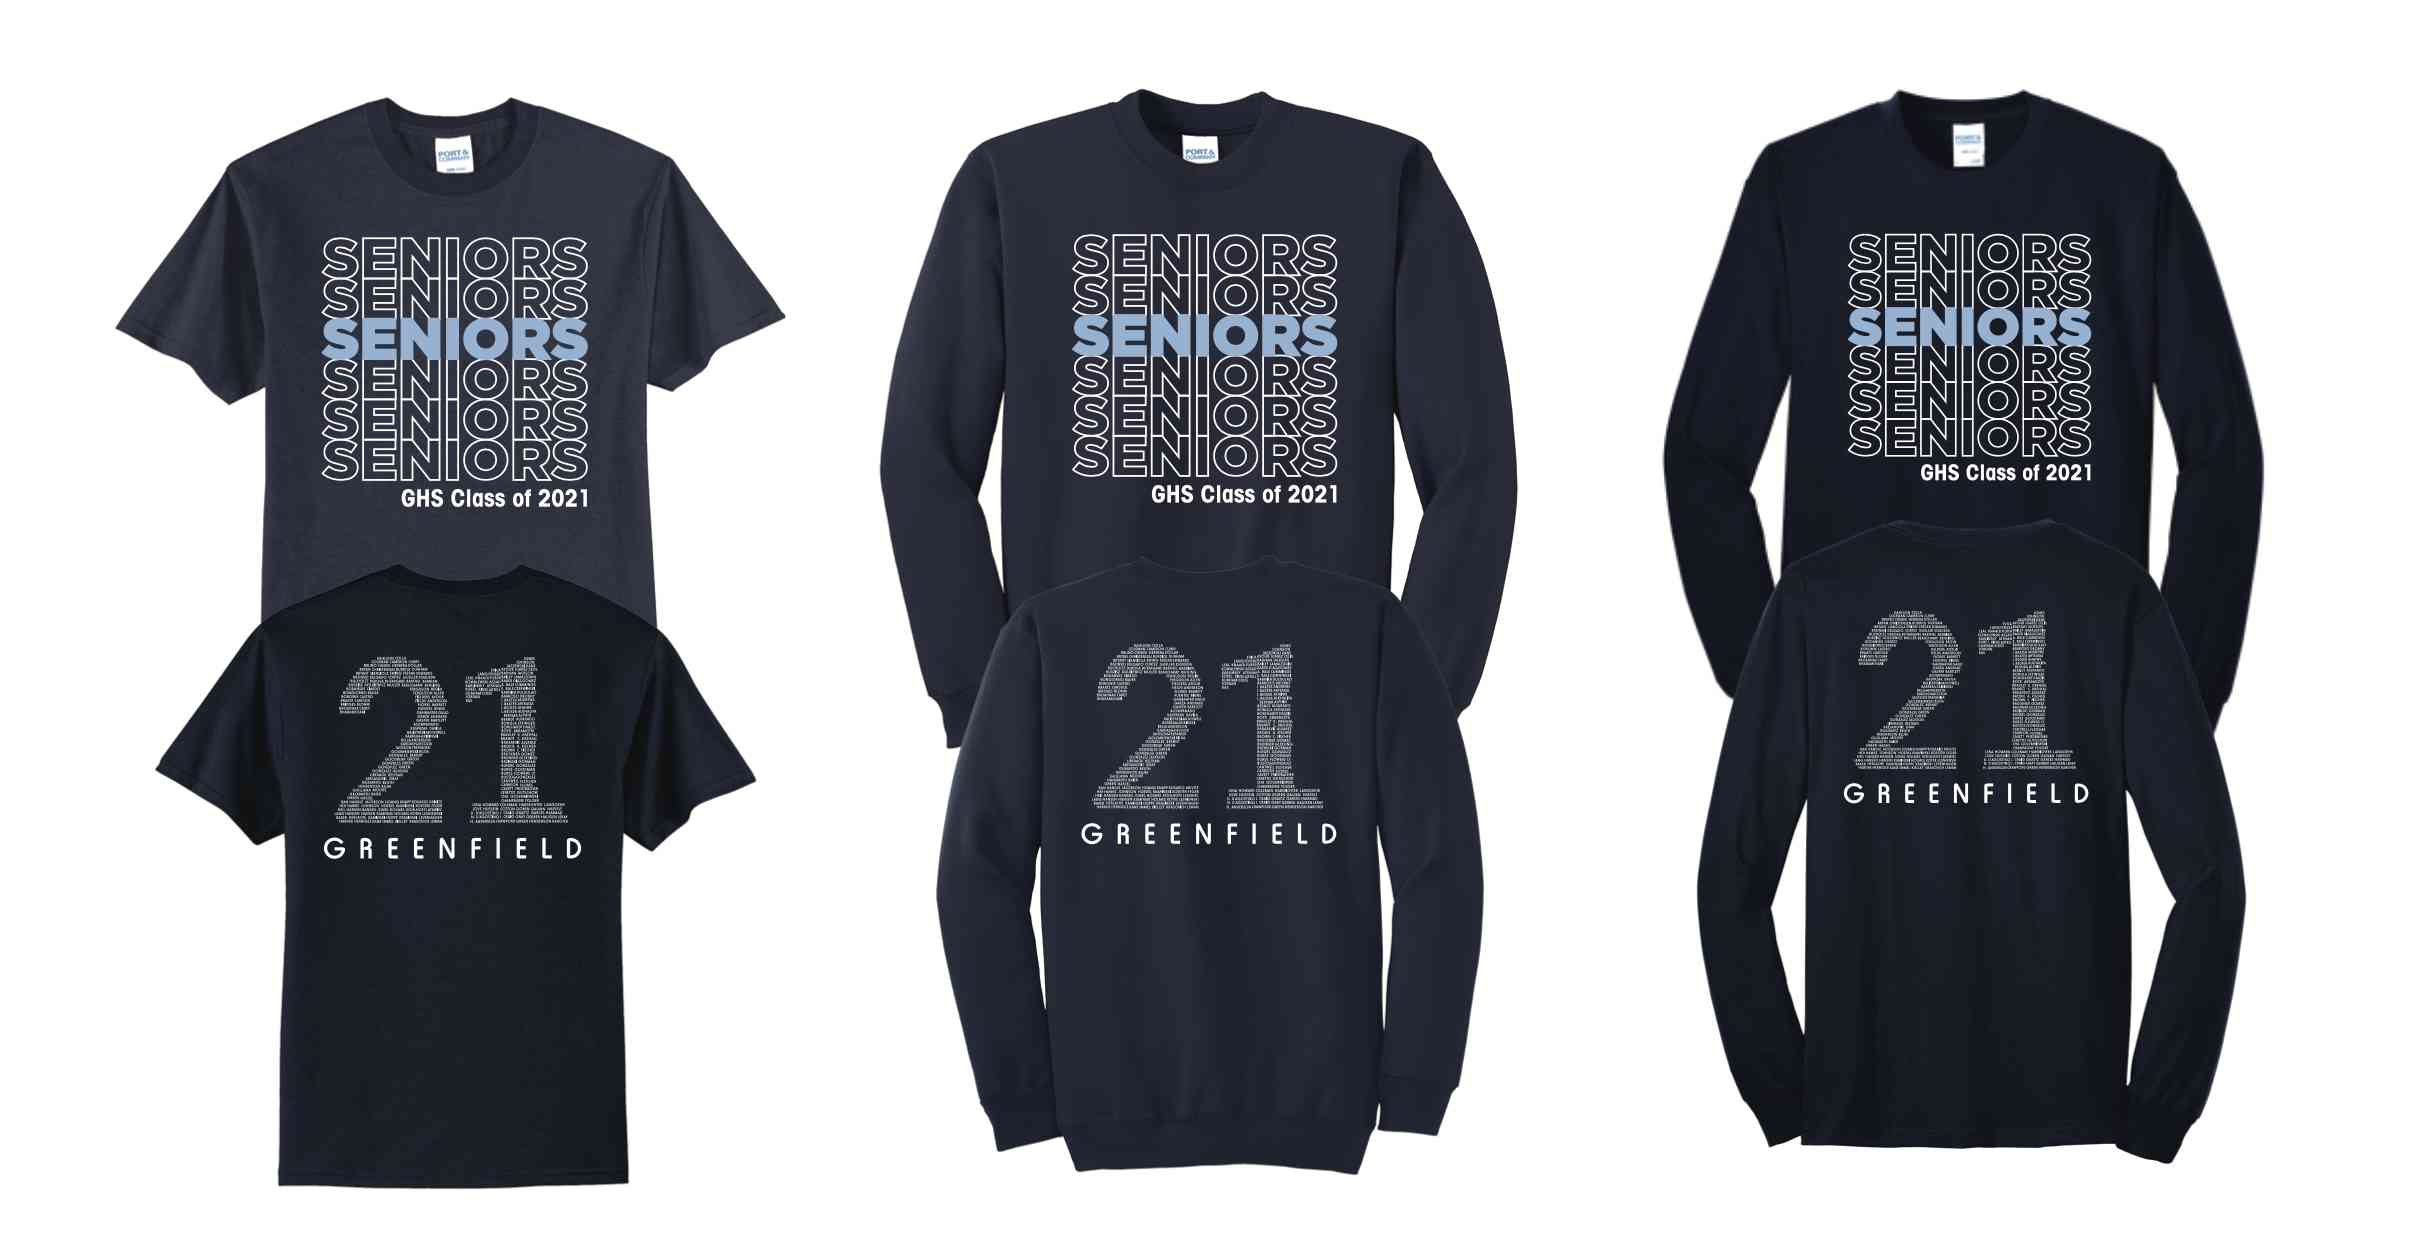 2021 Senior Shirts Image